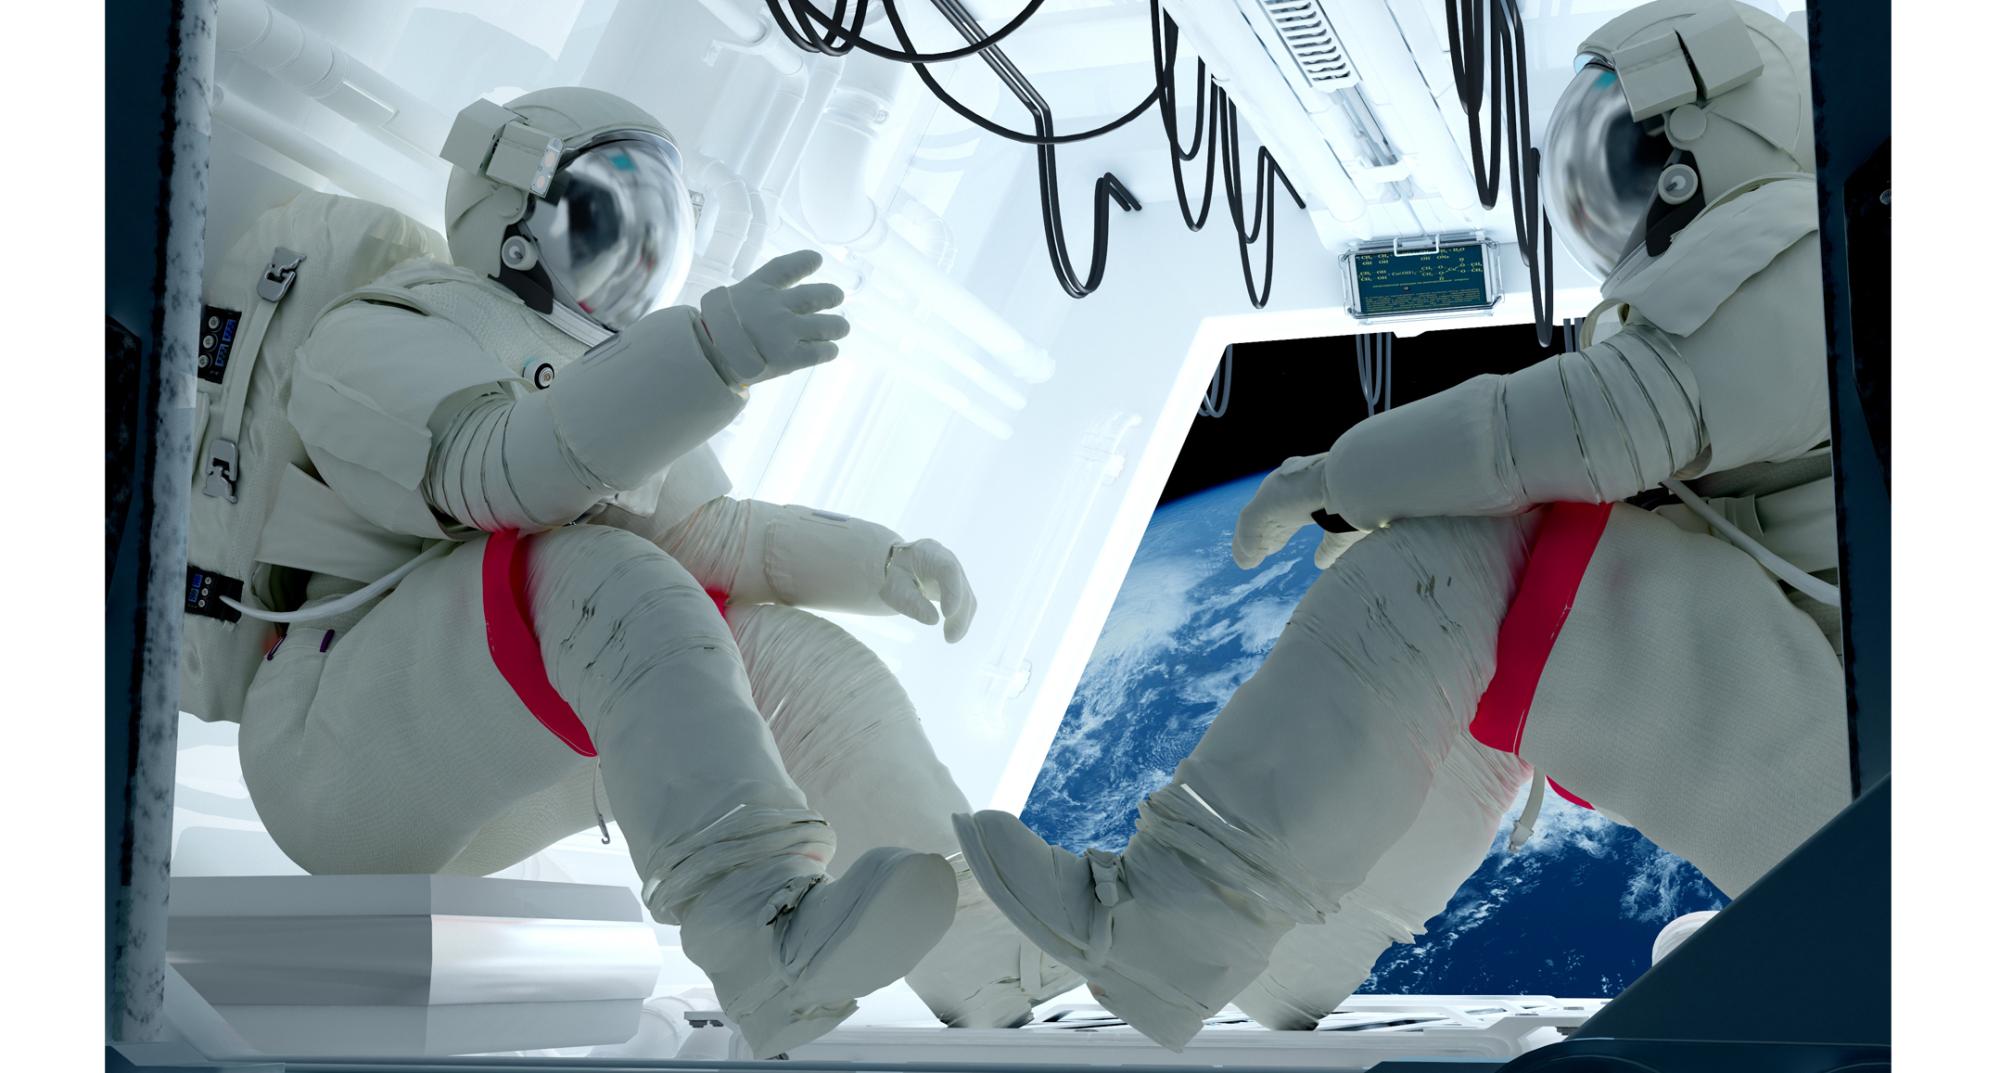 Imagen de referencia de astronautas. Créditos: Getty Images